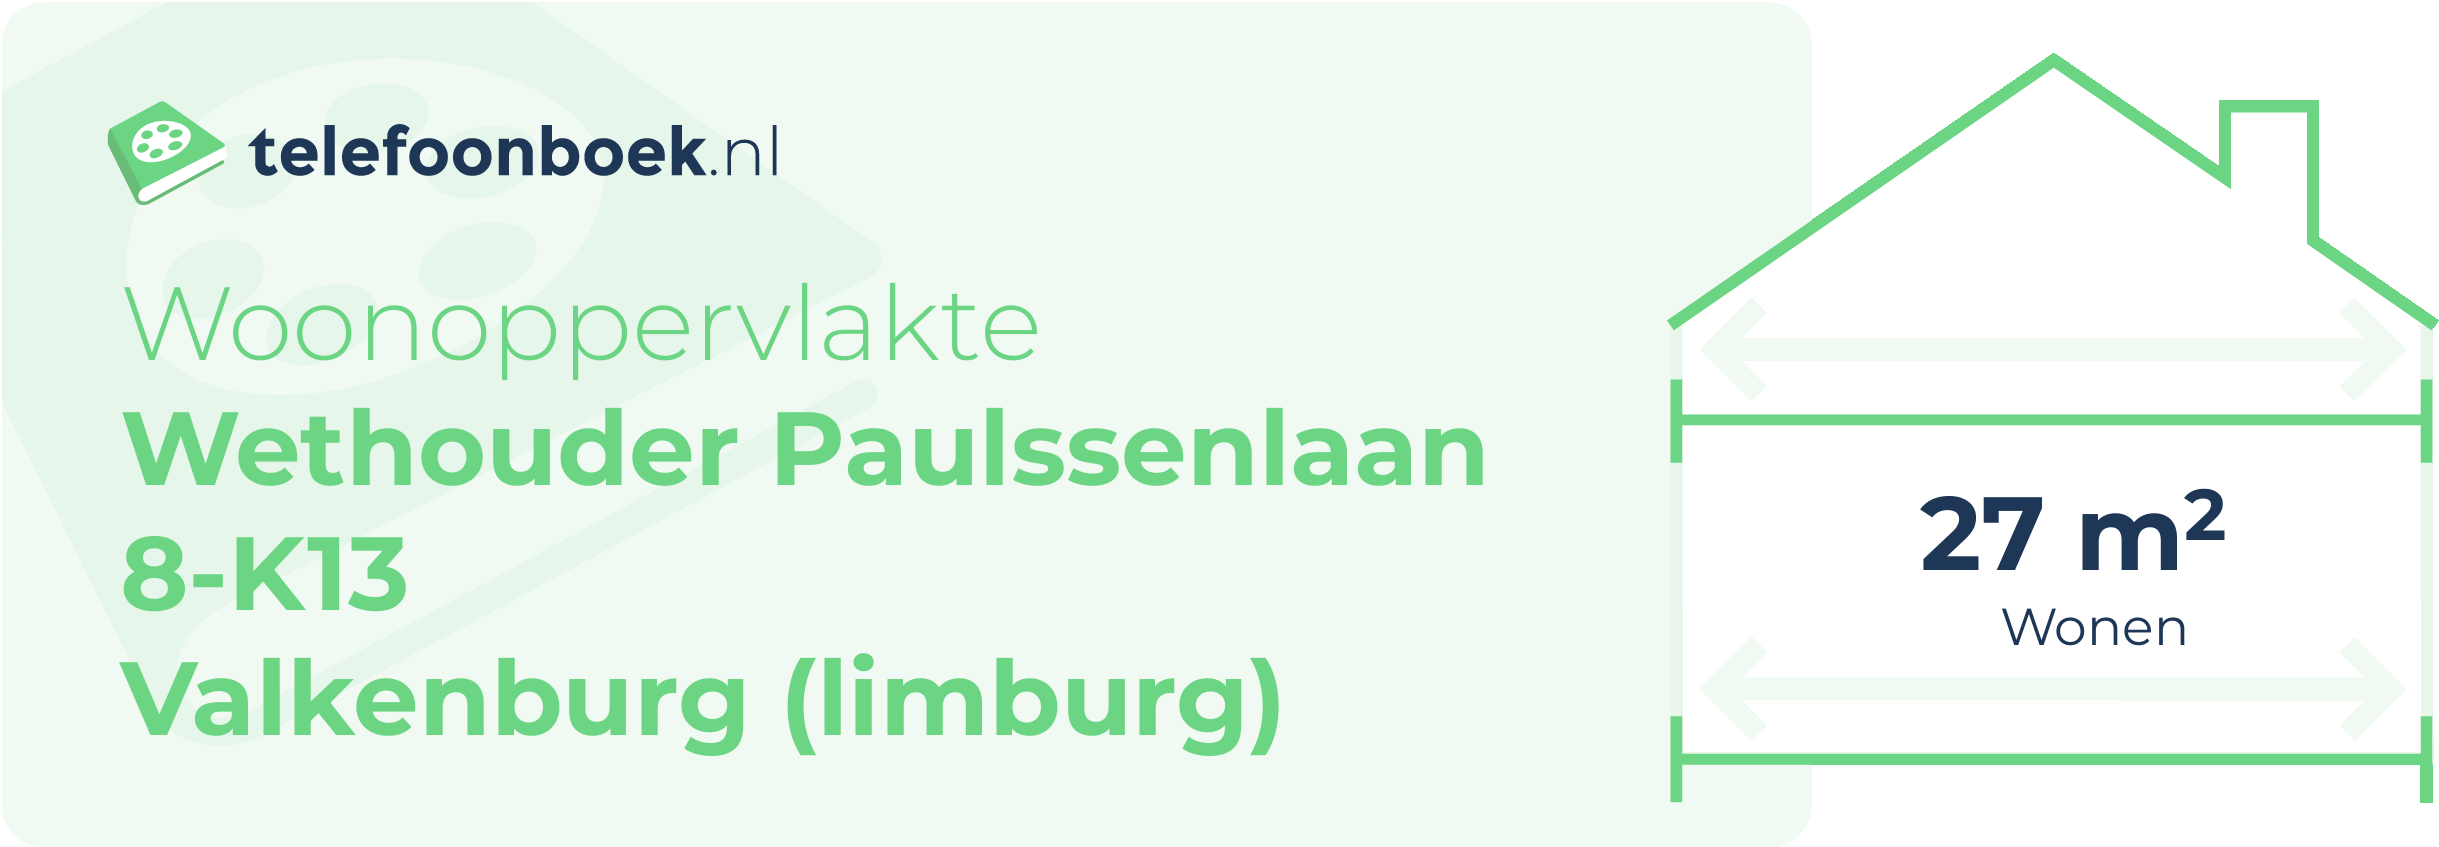 Woonoppervlakte Wethouder Paulssenlaan 8-K13 Valkenburg (Limburg)